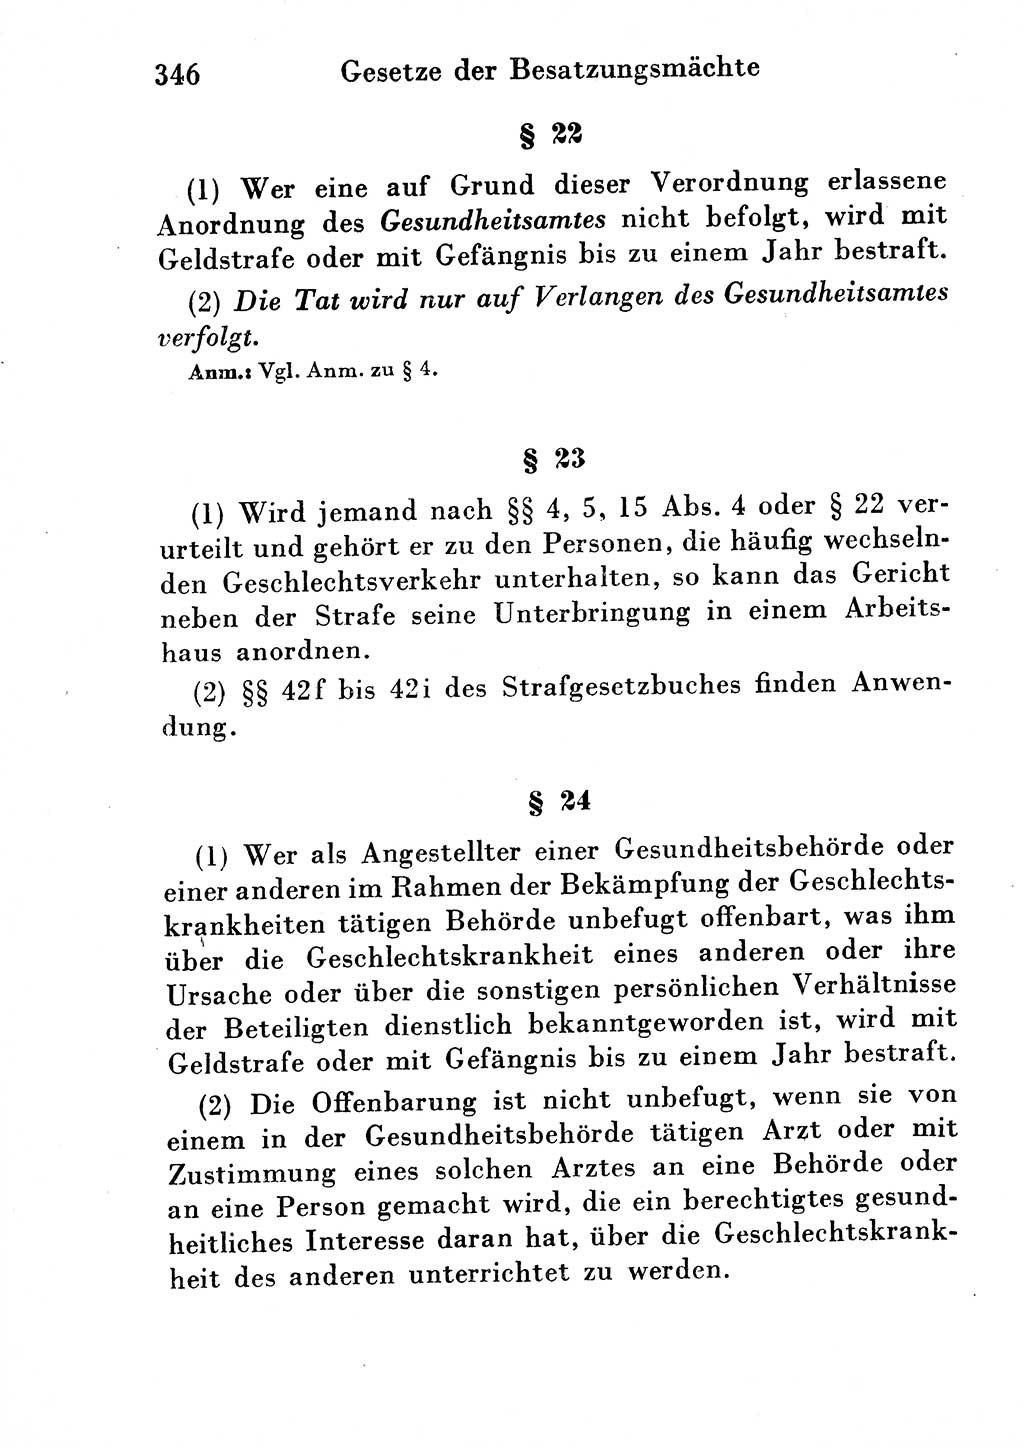 Strafgesetzbuch (StGB) und andere Strafgesetze [Deutsche Demokratische Republik (DDR)] 1954, Seite 346 (StGB Strafges. DDR 1954, S. 346)